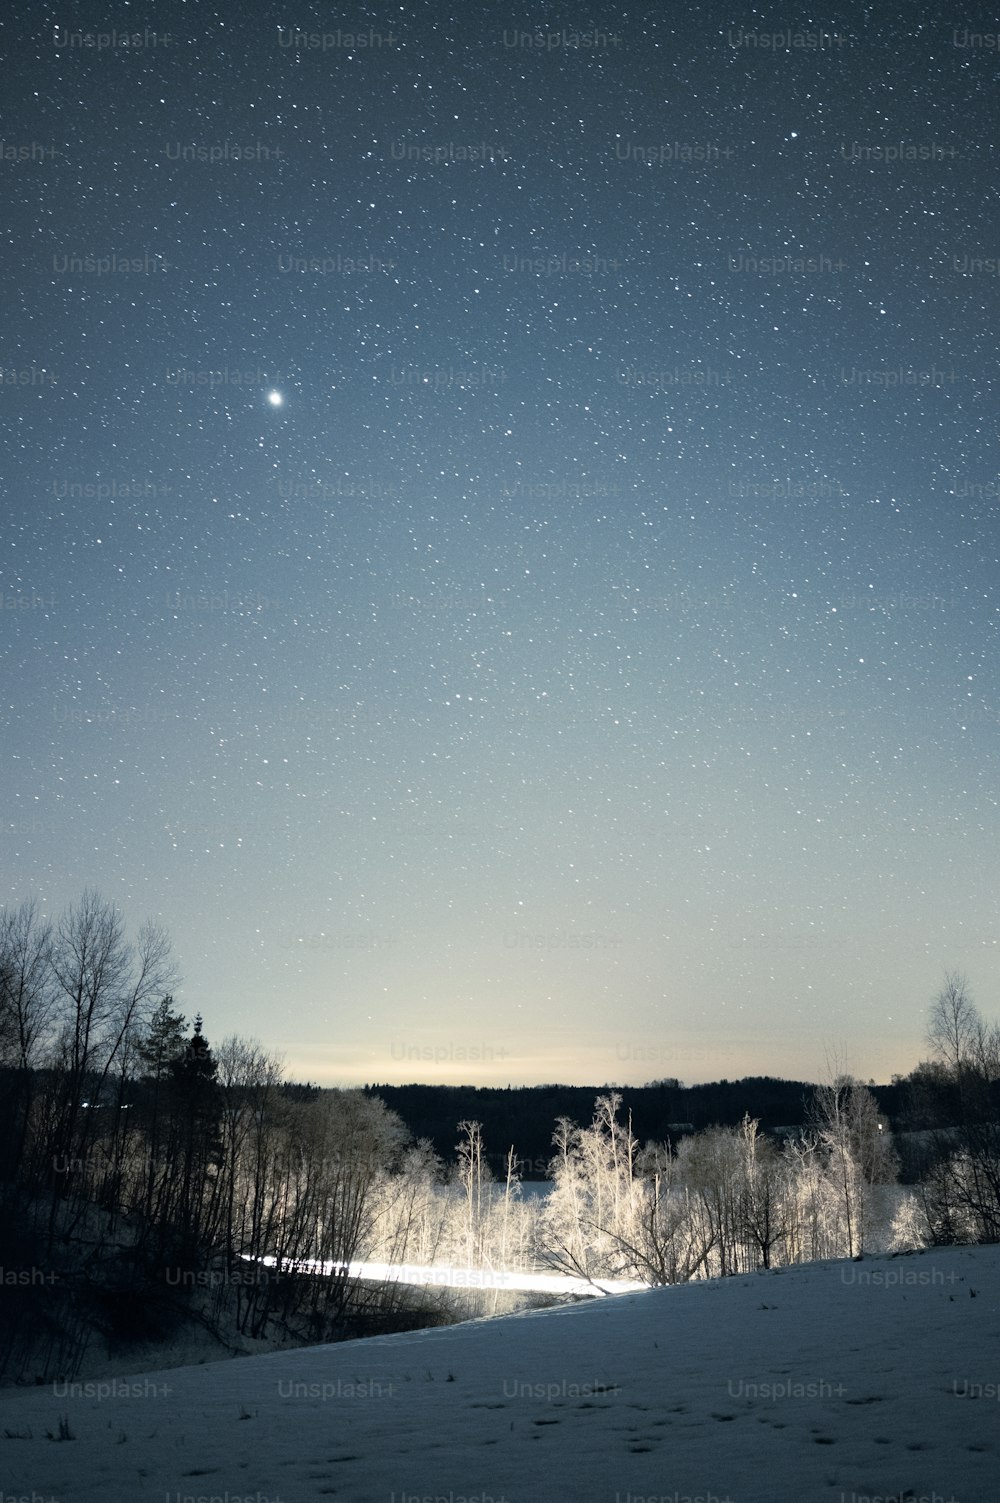 Le ciel nocturne avec des étoiles au-dessus d’un champ enneigé